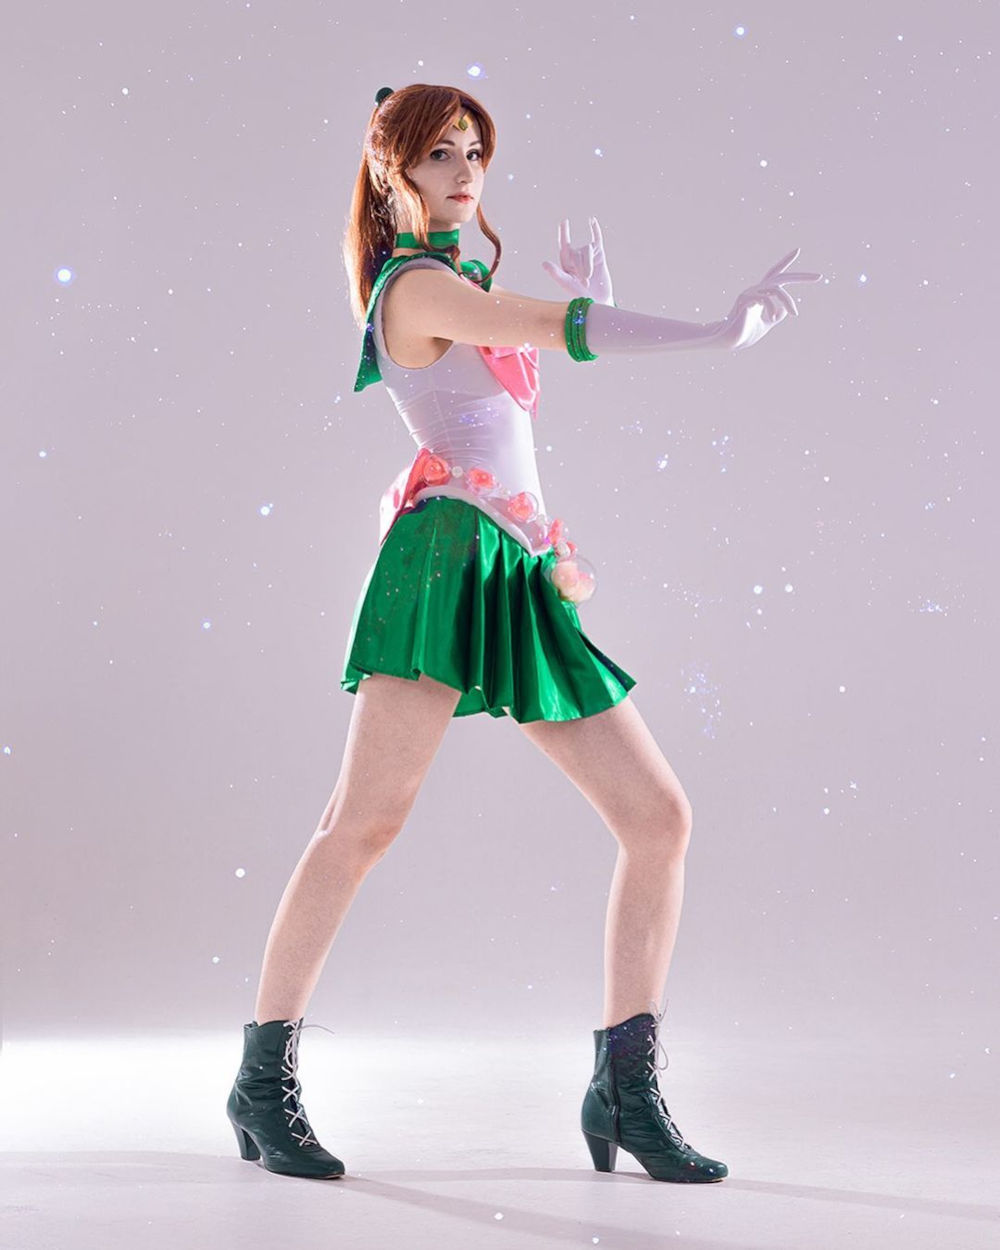 Sailor Jupiter se escapó a la vida real con un nostálgico cosplay